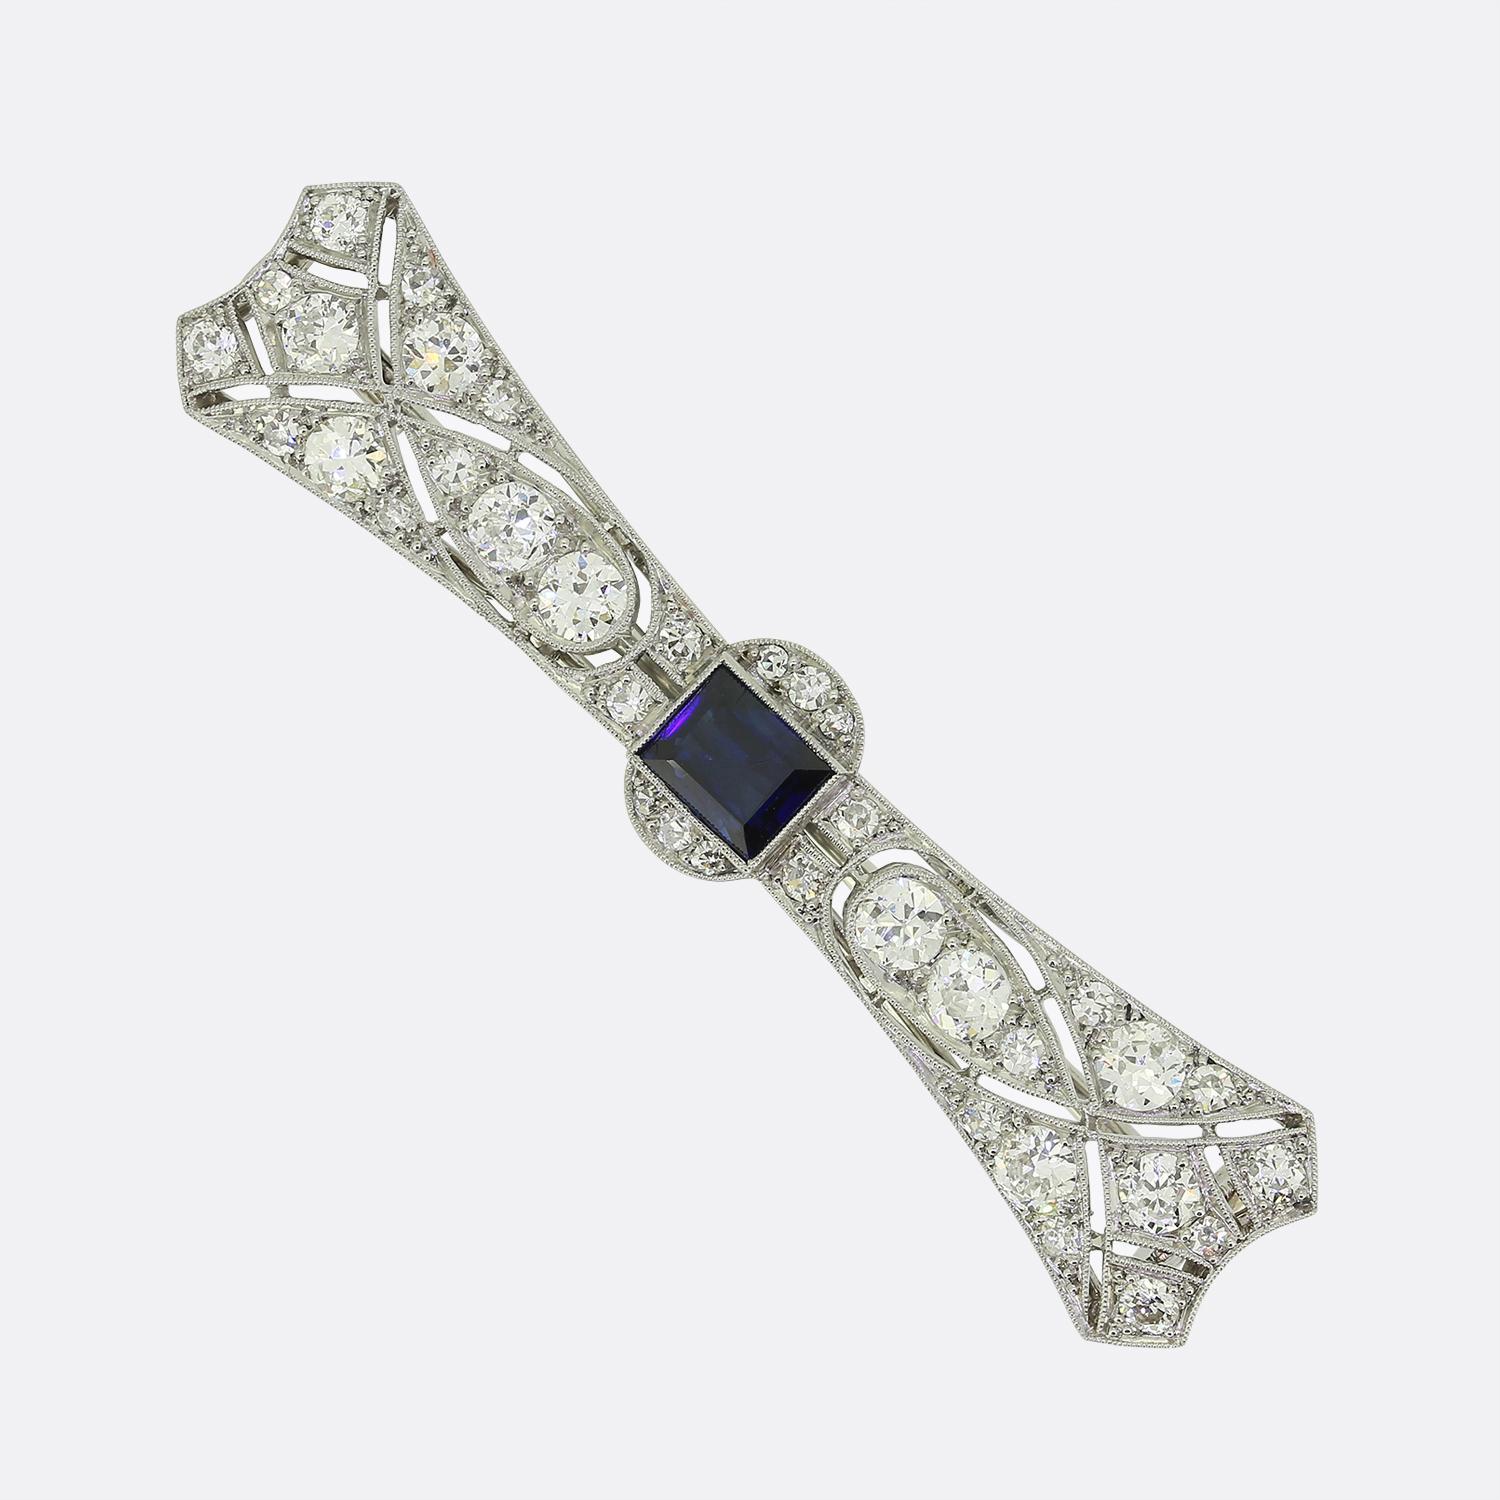 Dies ist eine Art-Deco-Brosche mit Saphiren und Diamanten des französischen Luxusschmuckdesigners LaCloche Frères. Die Brosche ist aus Platin gefertigt und der zentrale Saphir hat einen mittel- bis dunkelblauen Farbton. Der dunklere Ton des Saphirs